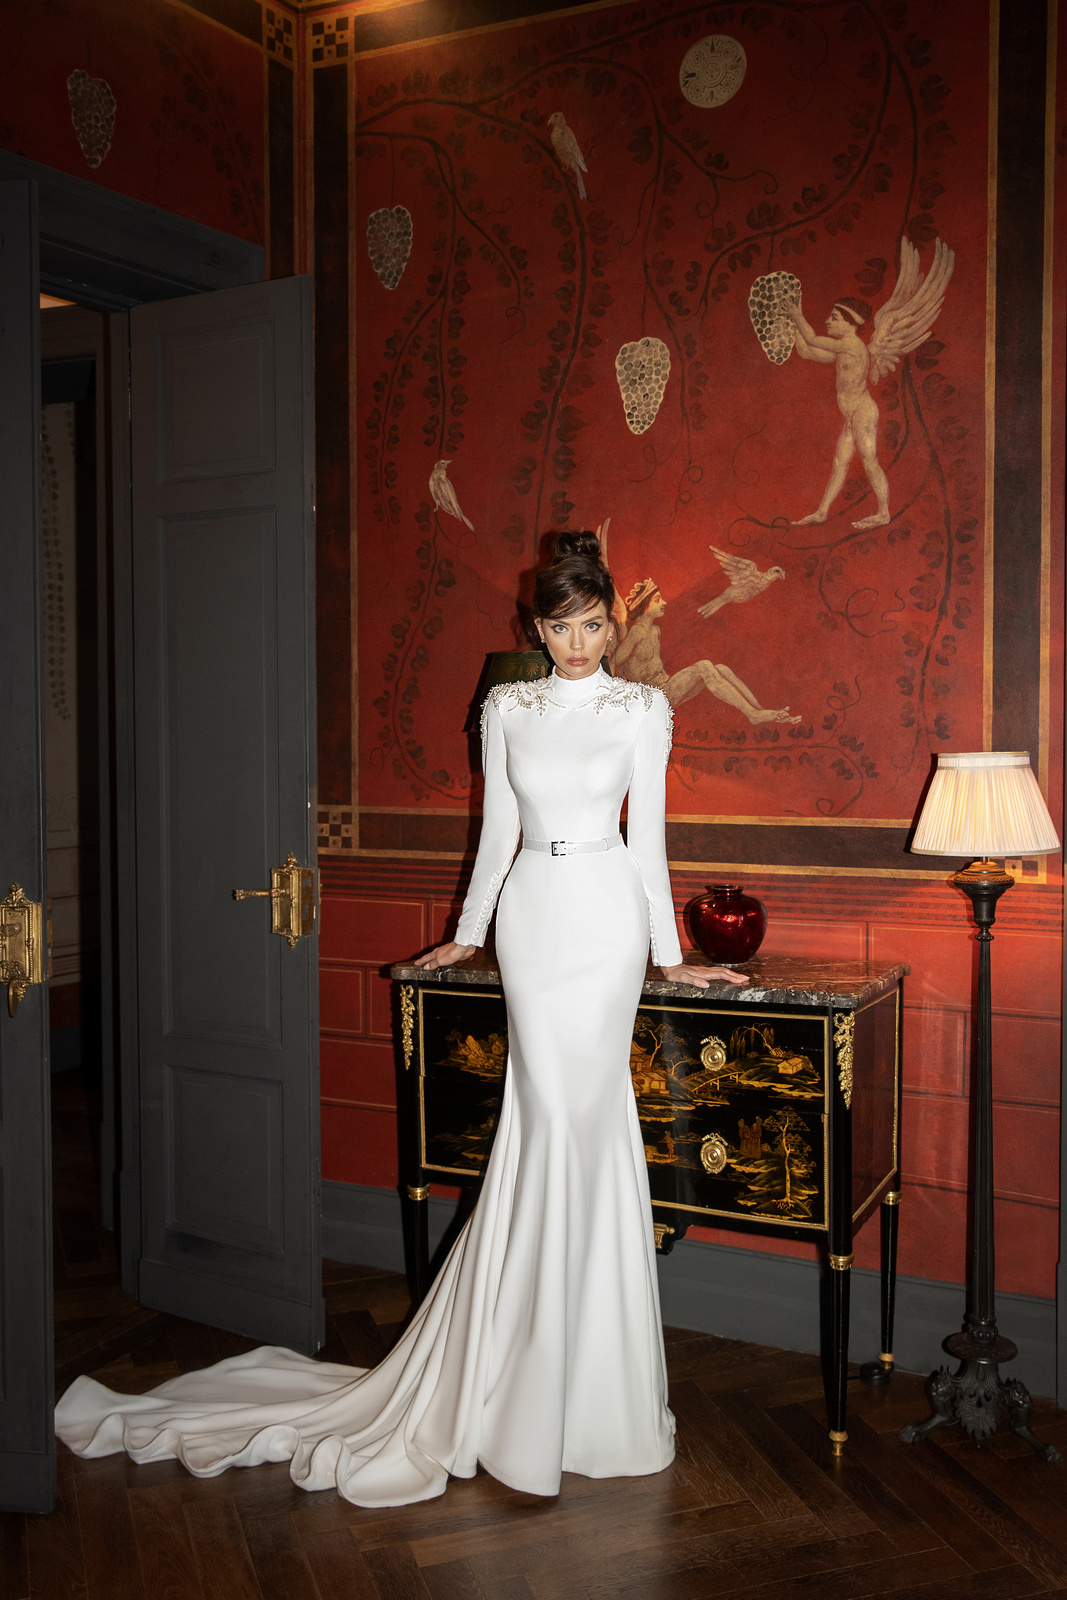 «Sorrento Italy 2021»: вдохновляющие платья от бренда Luce Sposa